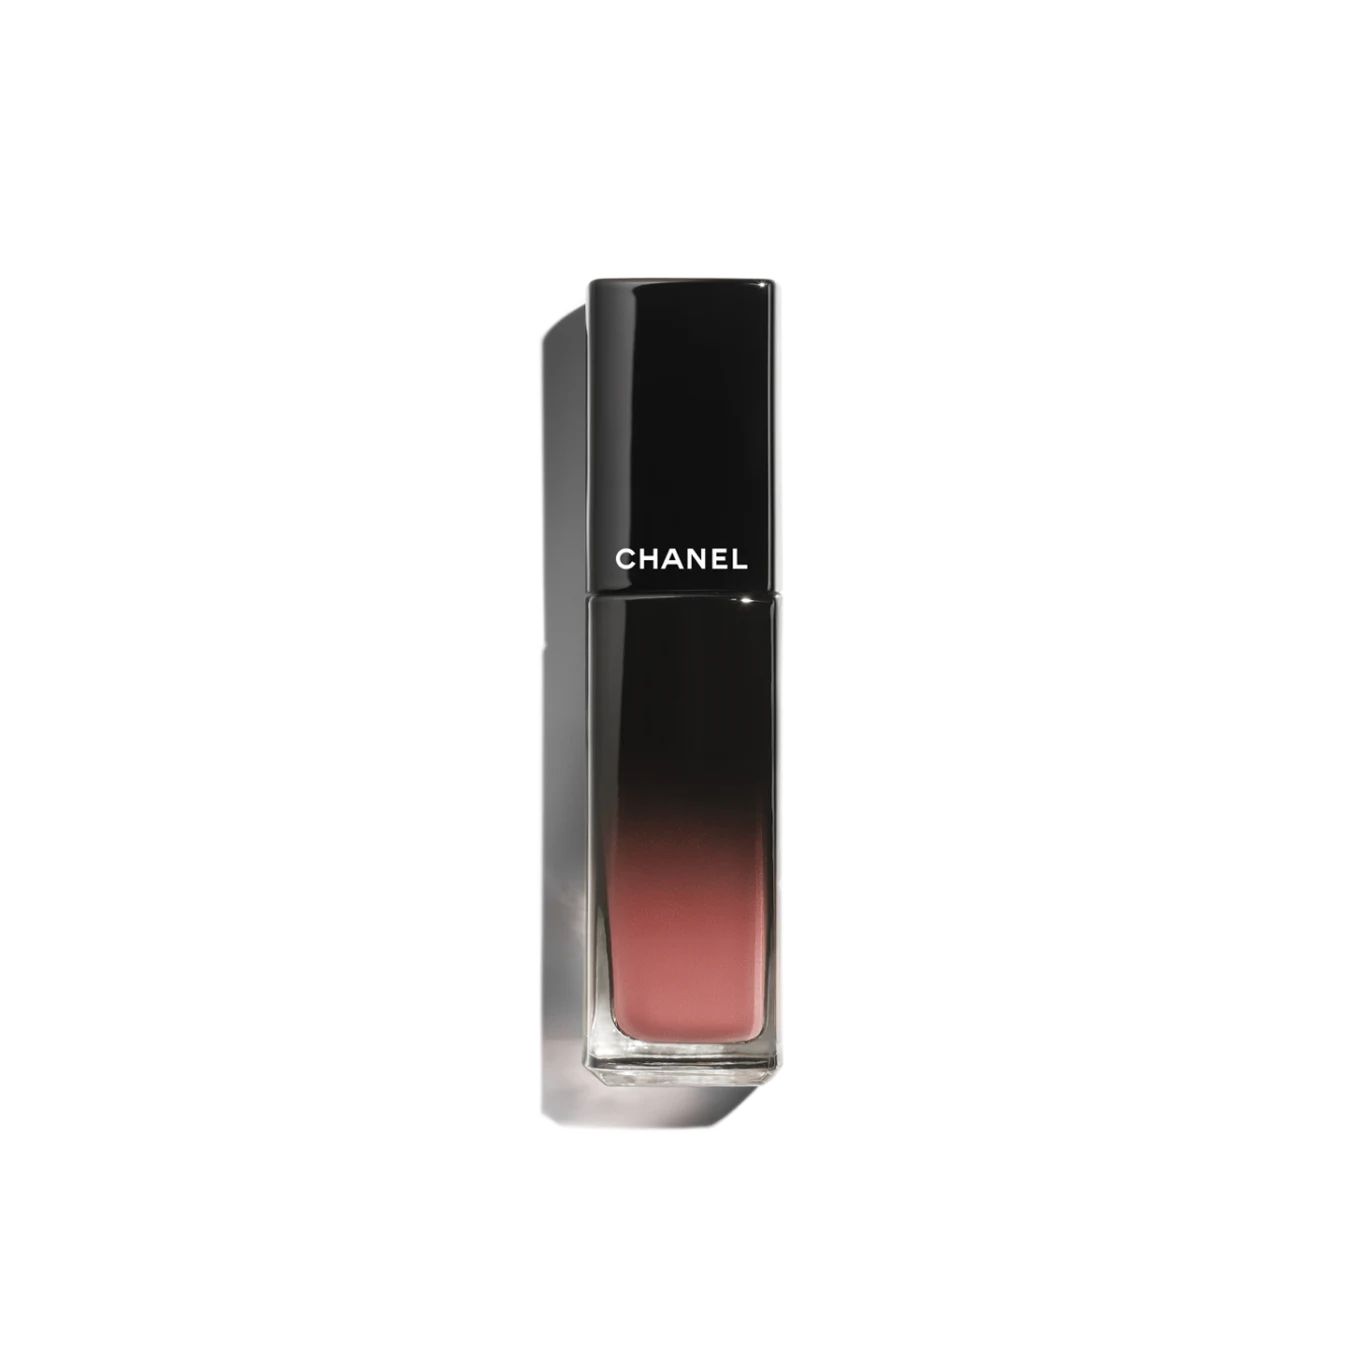 ROUGE ALLURE LAQUE Ultrawear shine liquid lip colour 92 - Sea shell | CHANEL | Chanel, Inc. (US)